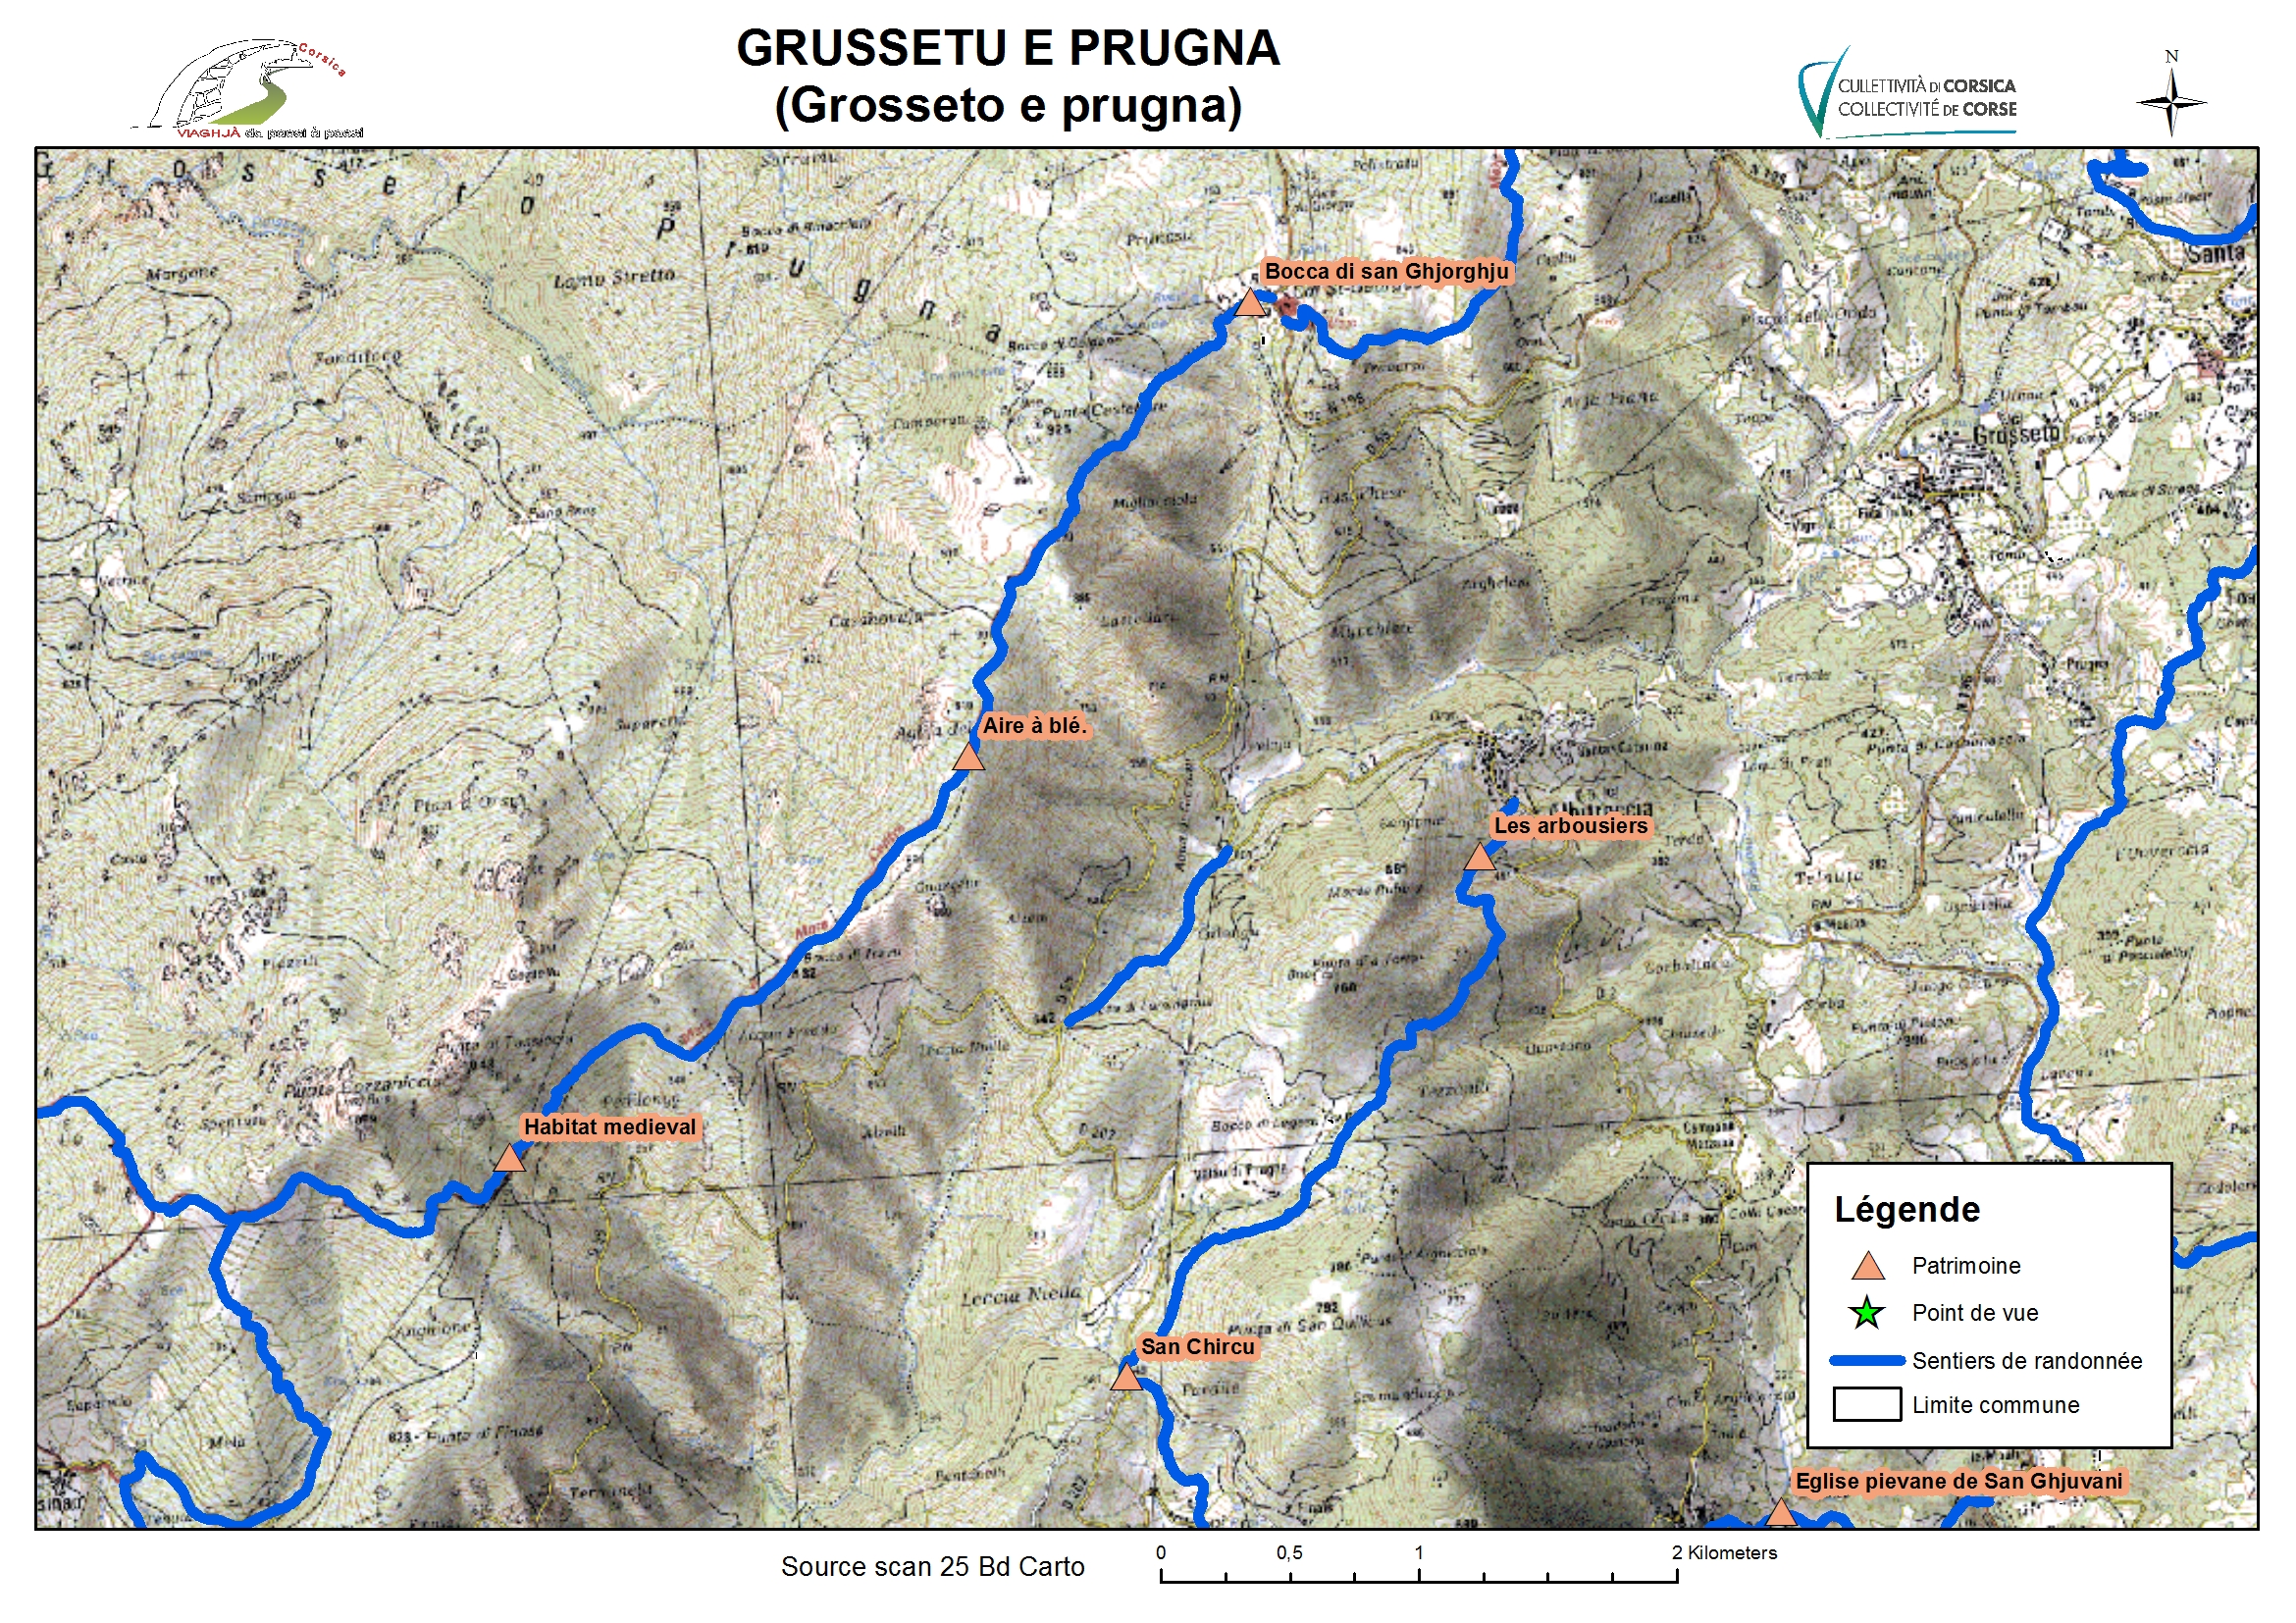 Grosseto-Prugna (Grussetu è Prugna)